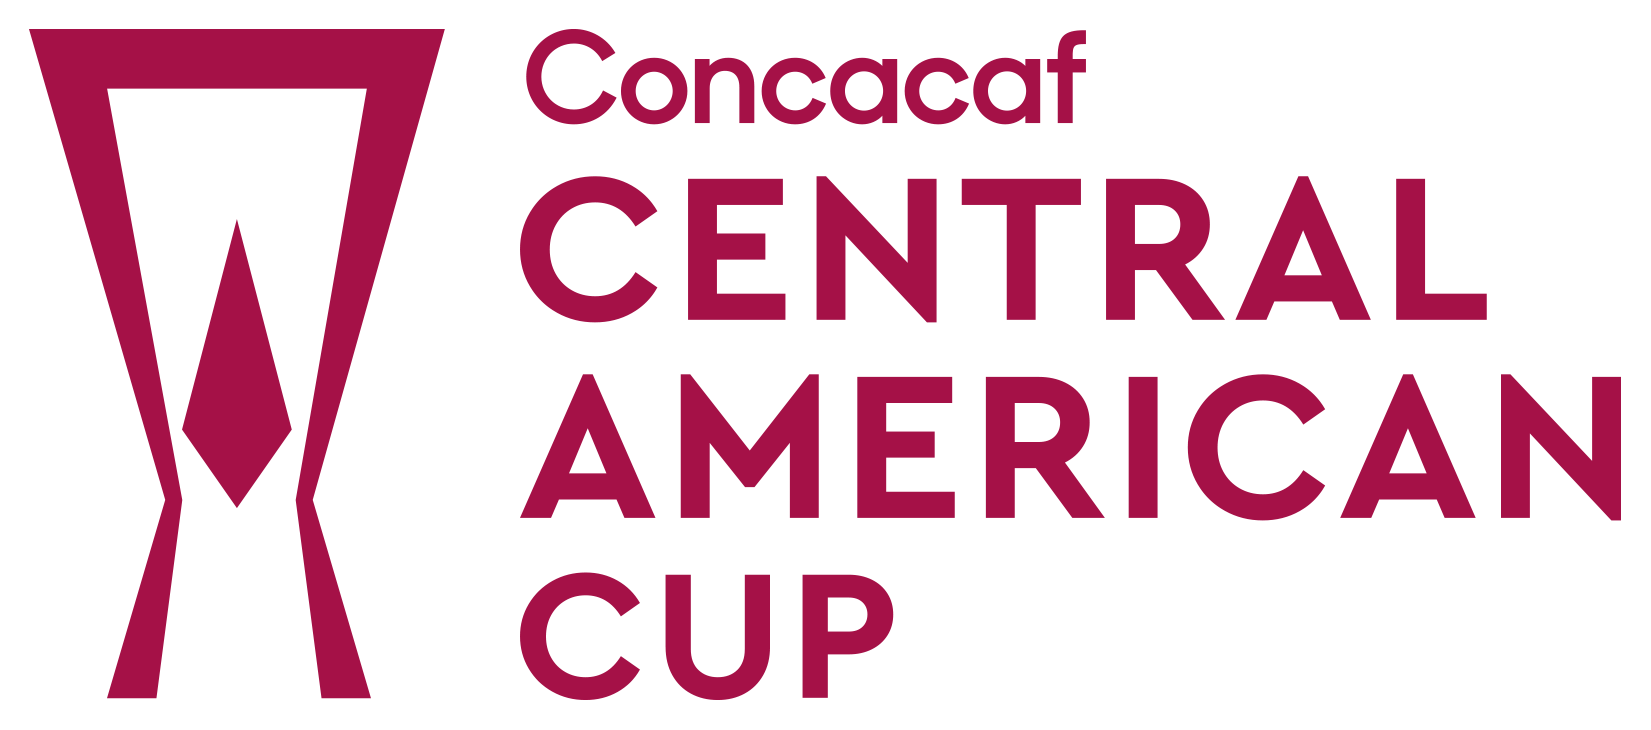 Puchar Ameryki Środkowej CONCACAF